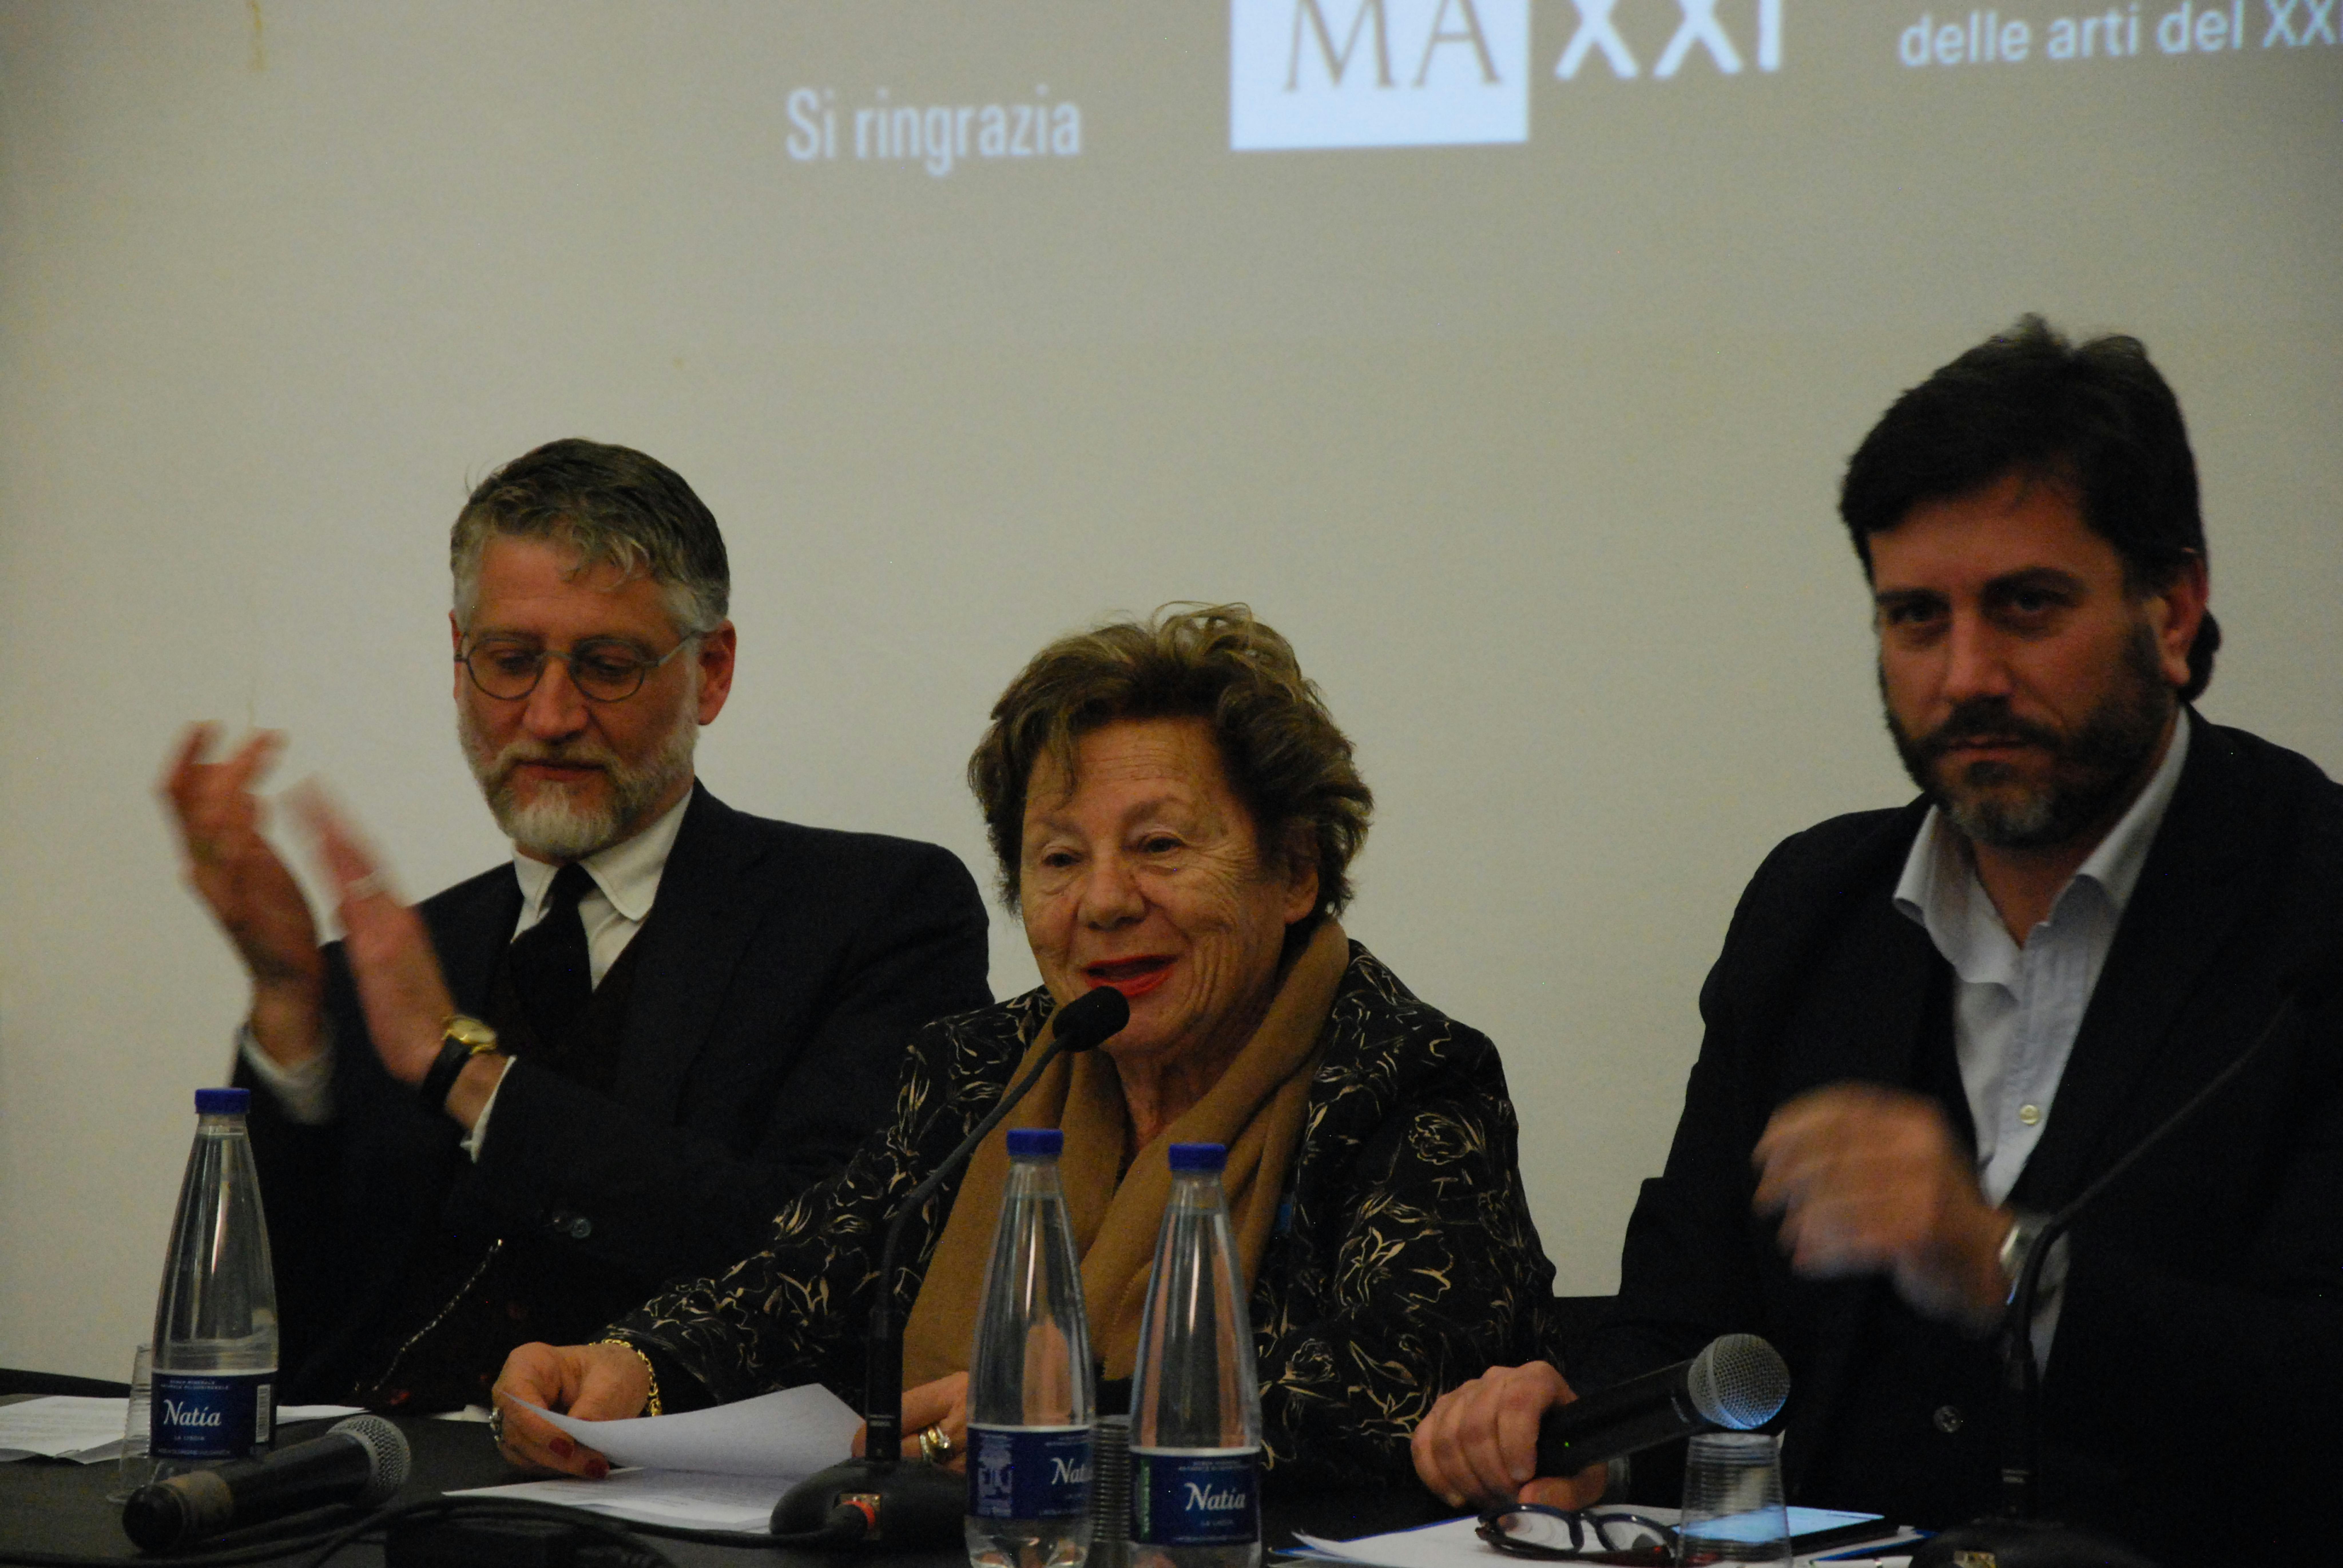 Alessandro Giuli, Presidente del MAXXI, Carmela Pace, Presidente dell'UNICEF Italia e Andrea Iacomini, Portavoce dell'UNICEF Italia